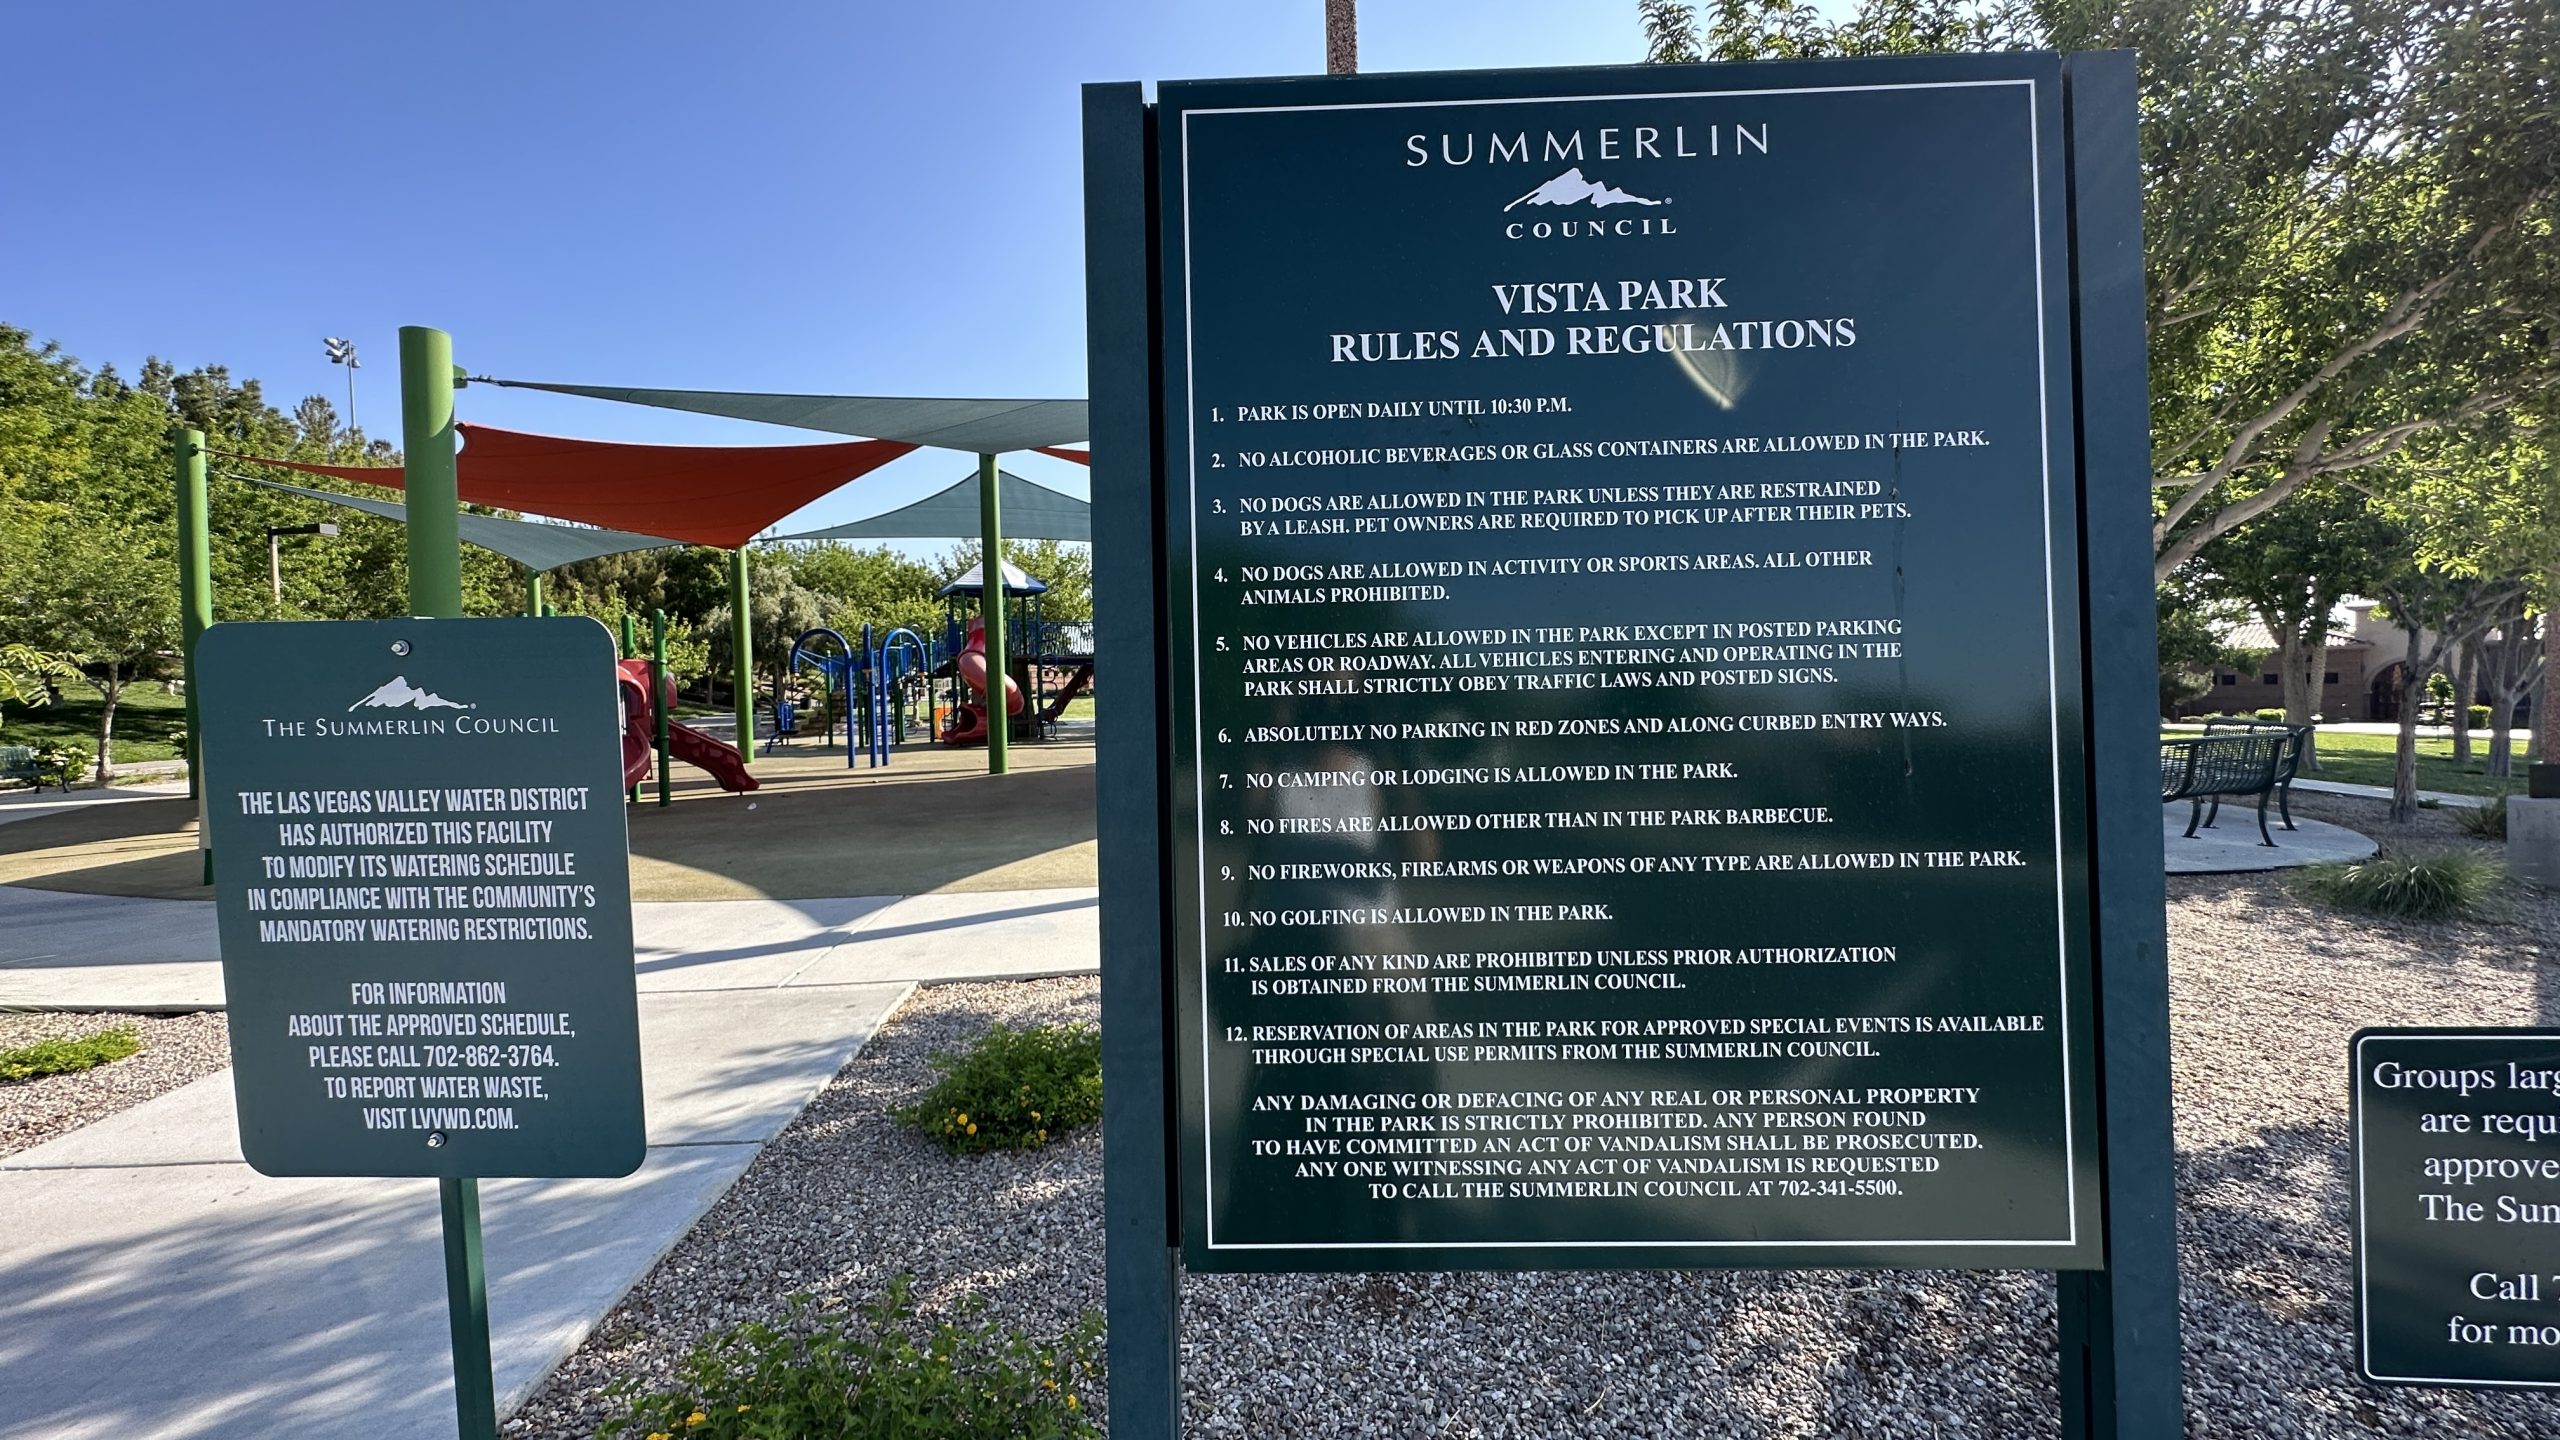 The Vistas Park